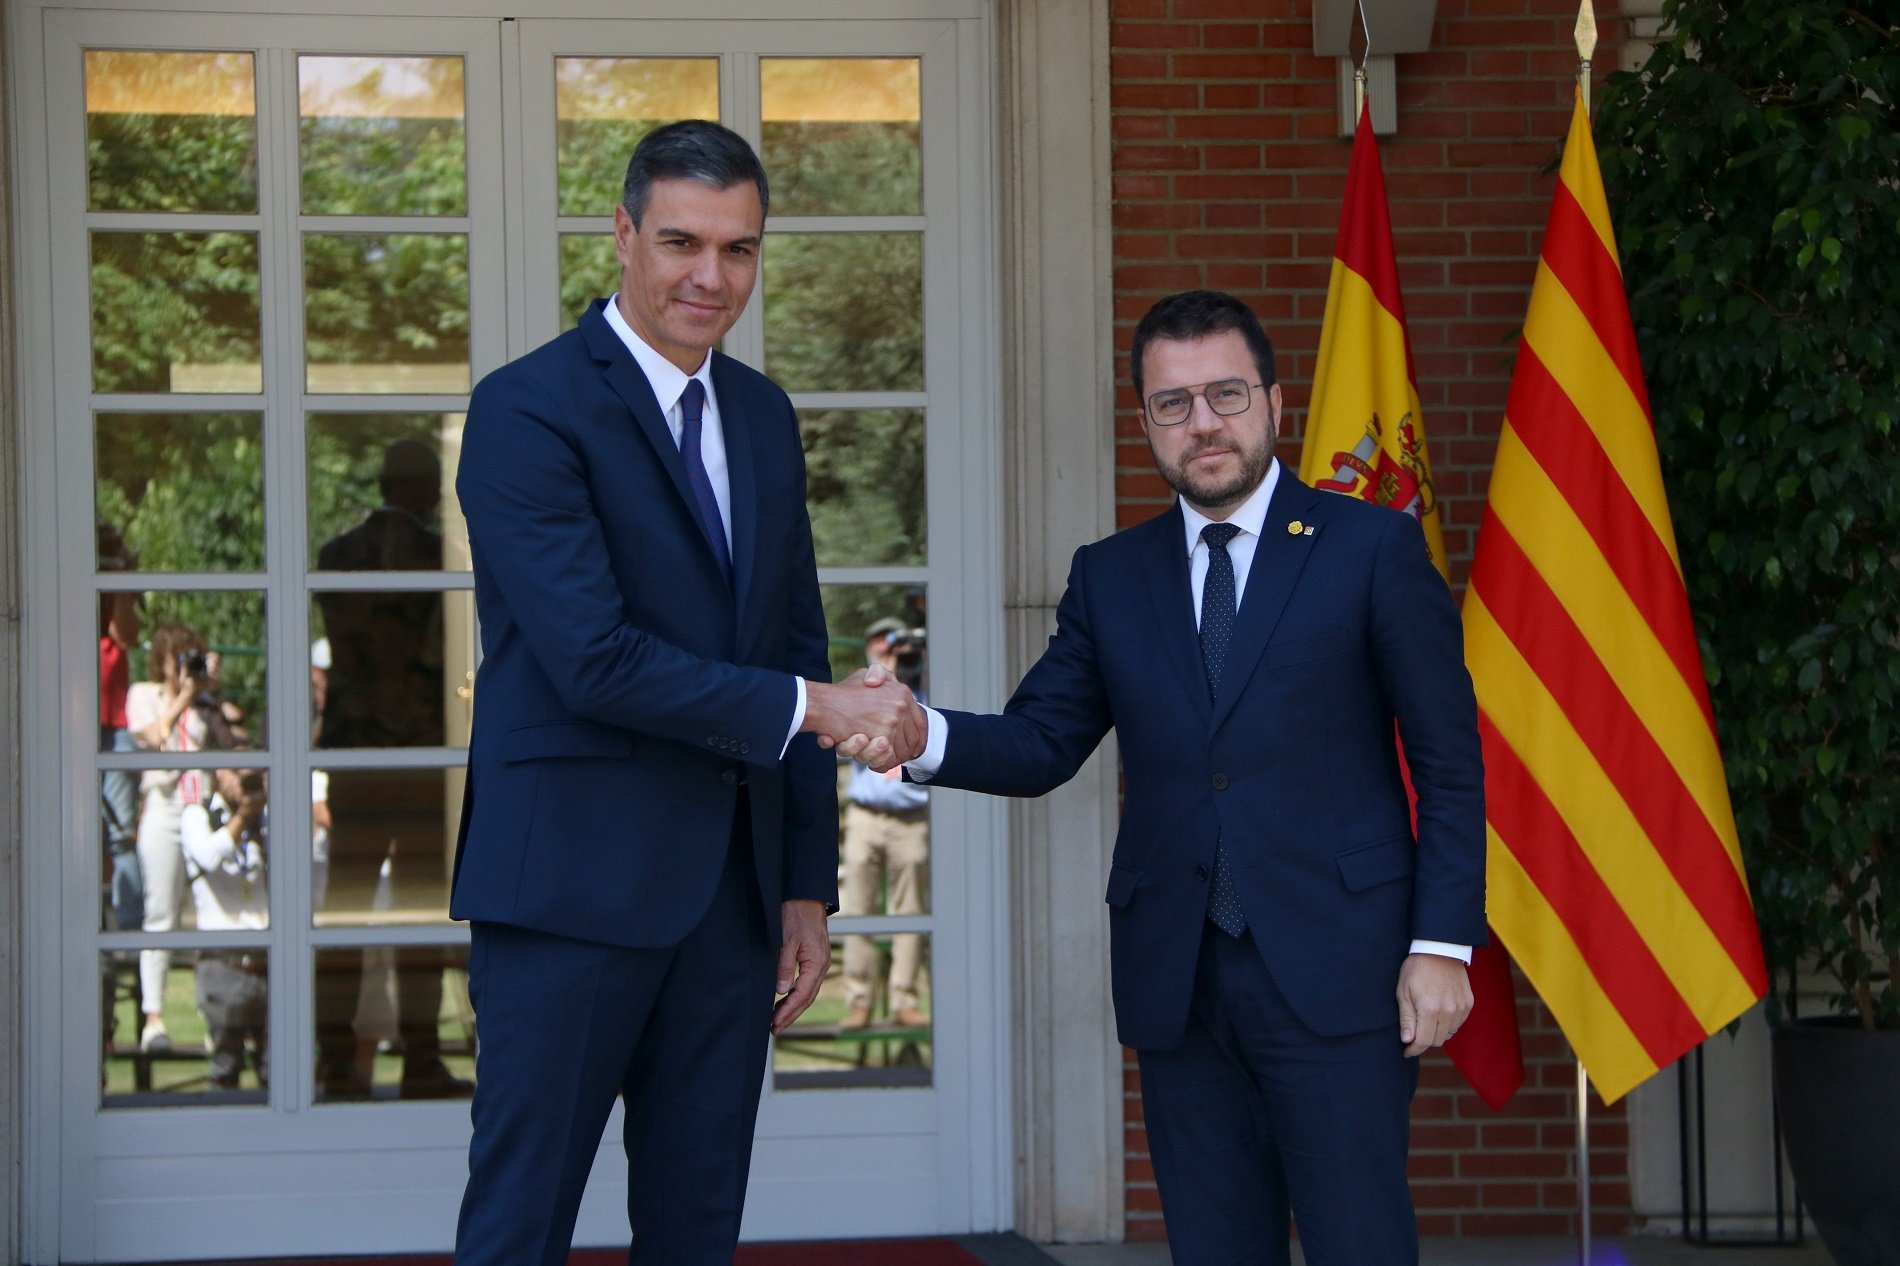 Sis de cada deu catalans veuen "insuficient" la cooperació entre el Govern i l'executiu espanyol